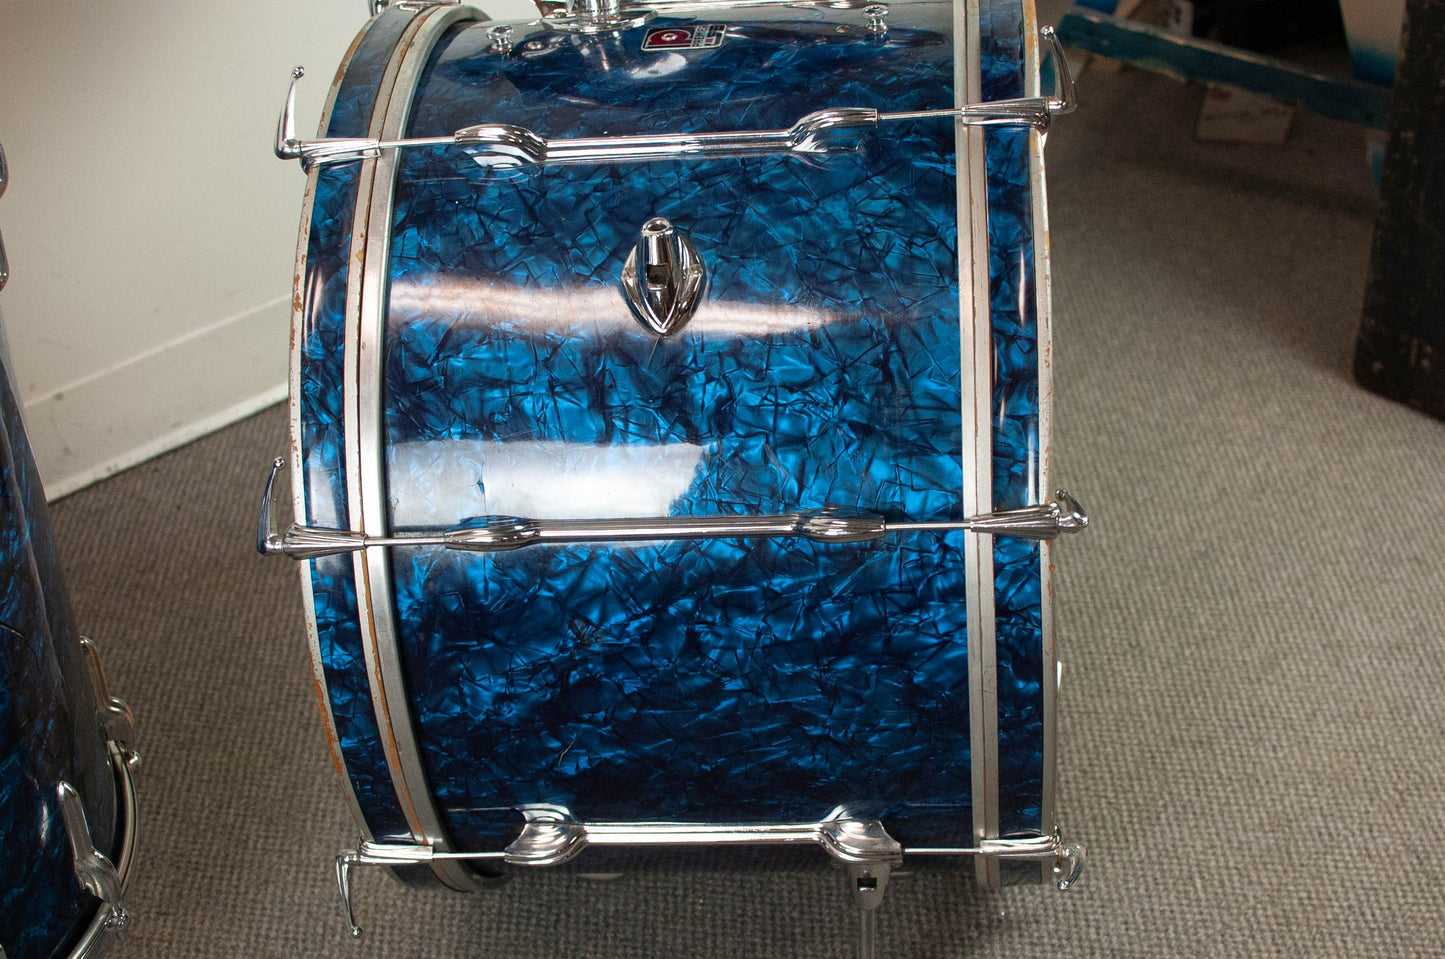 1960s Premier "B54" Blue Pearl Drum Set